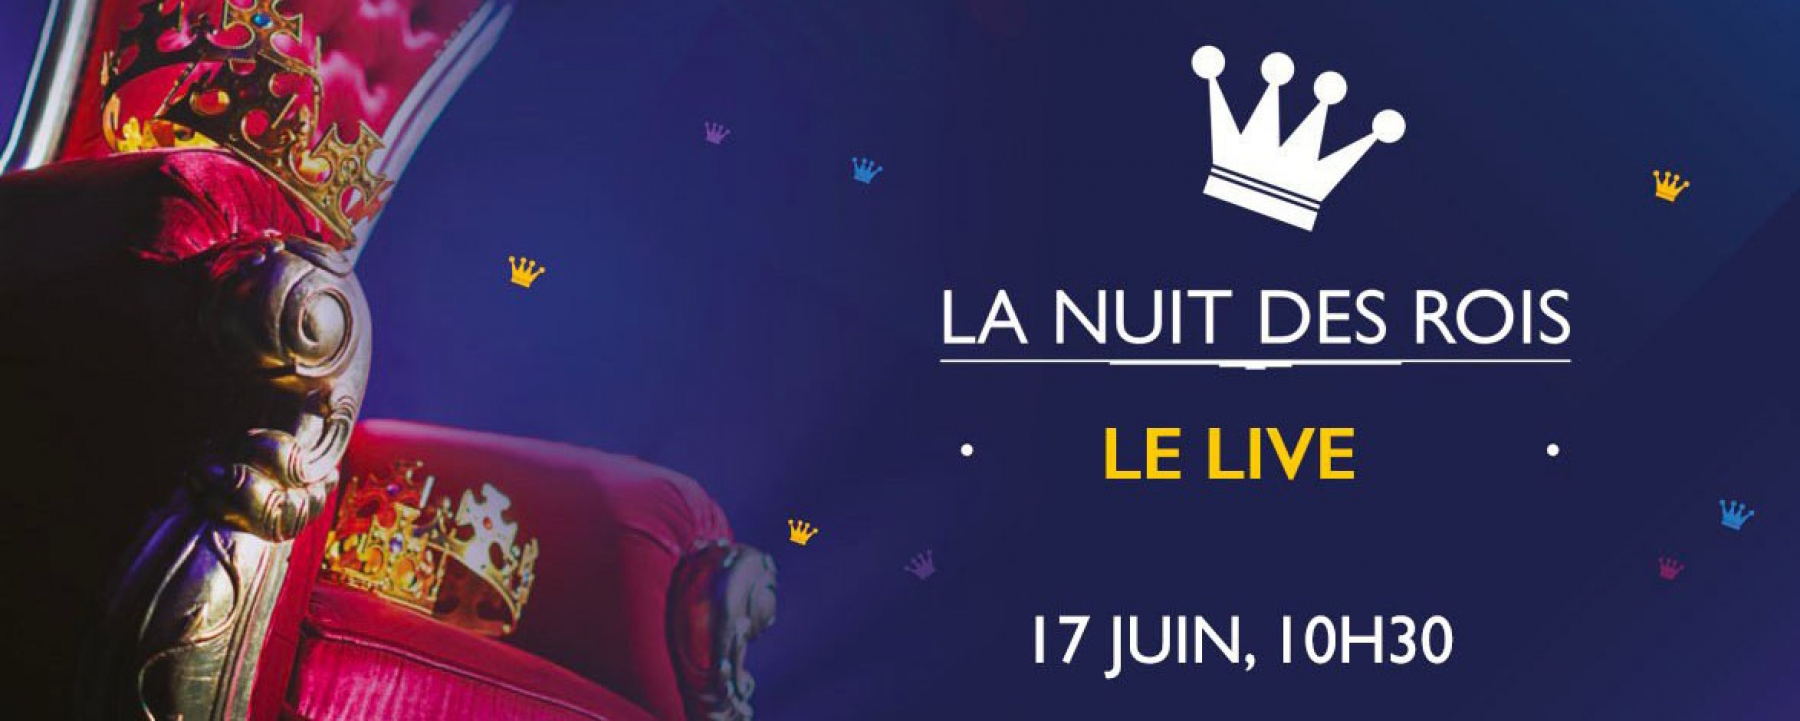 La Nuit des Rois 2021, le 17 juin 2021 par Viuz and Co